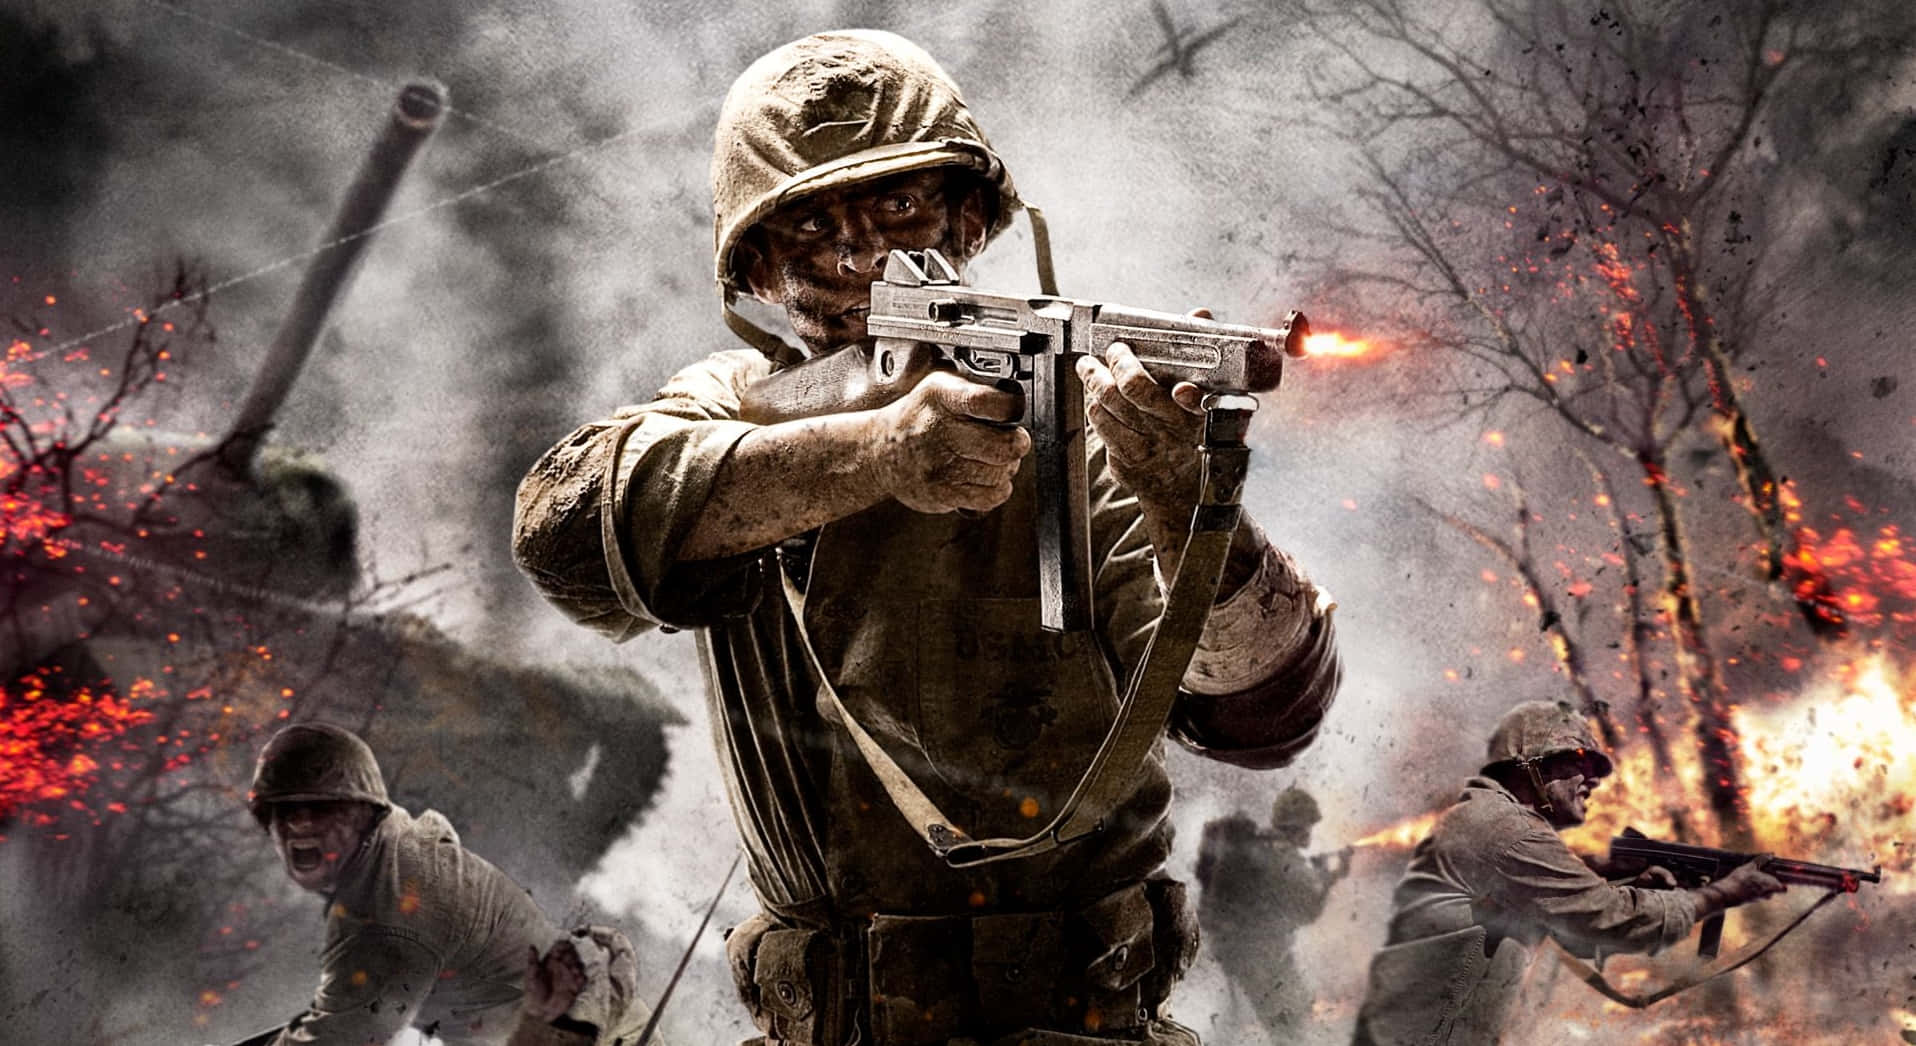 Kode Zombies Soldat i Krigsscene Wallpaper